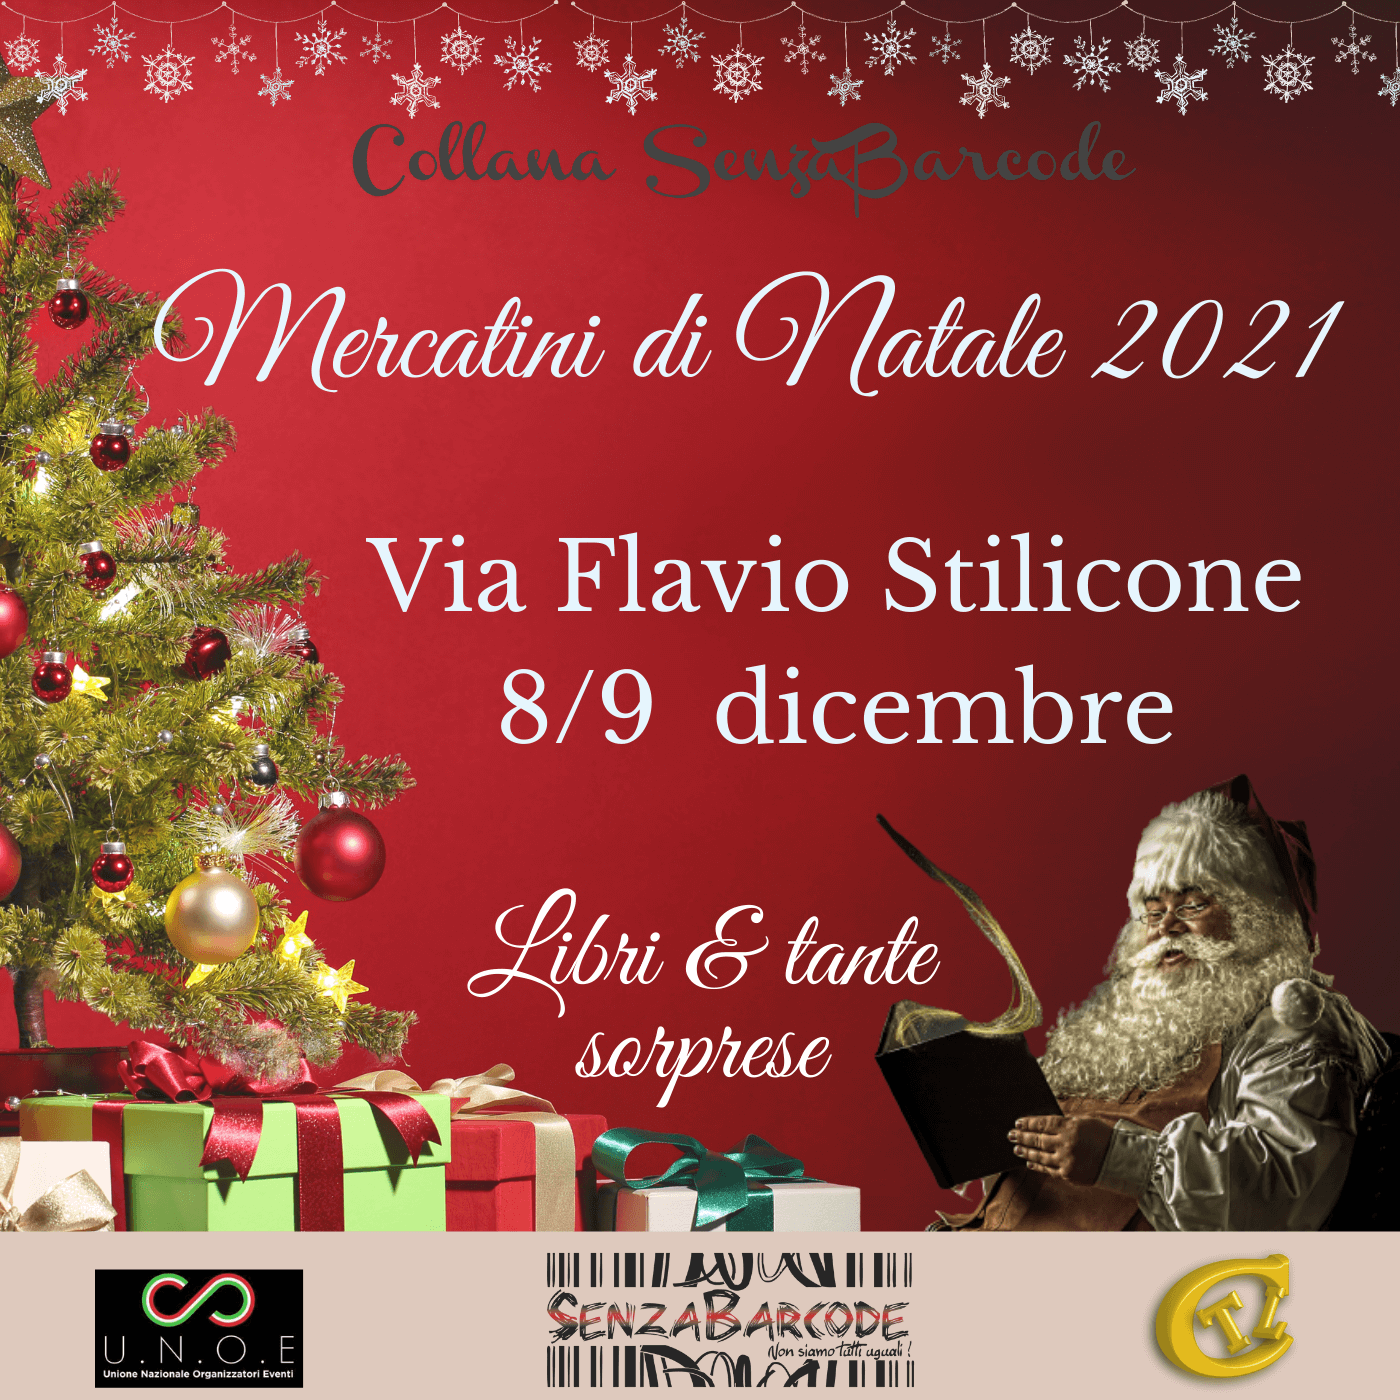 Natale in via Flavio Stilicone con SenzaBarcode